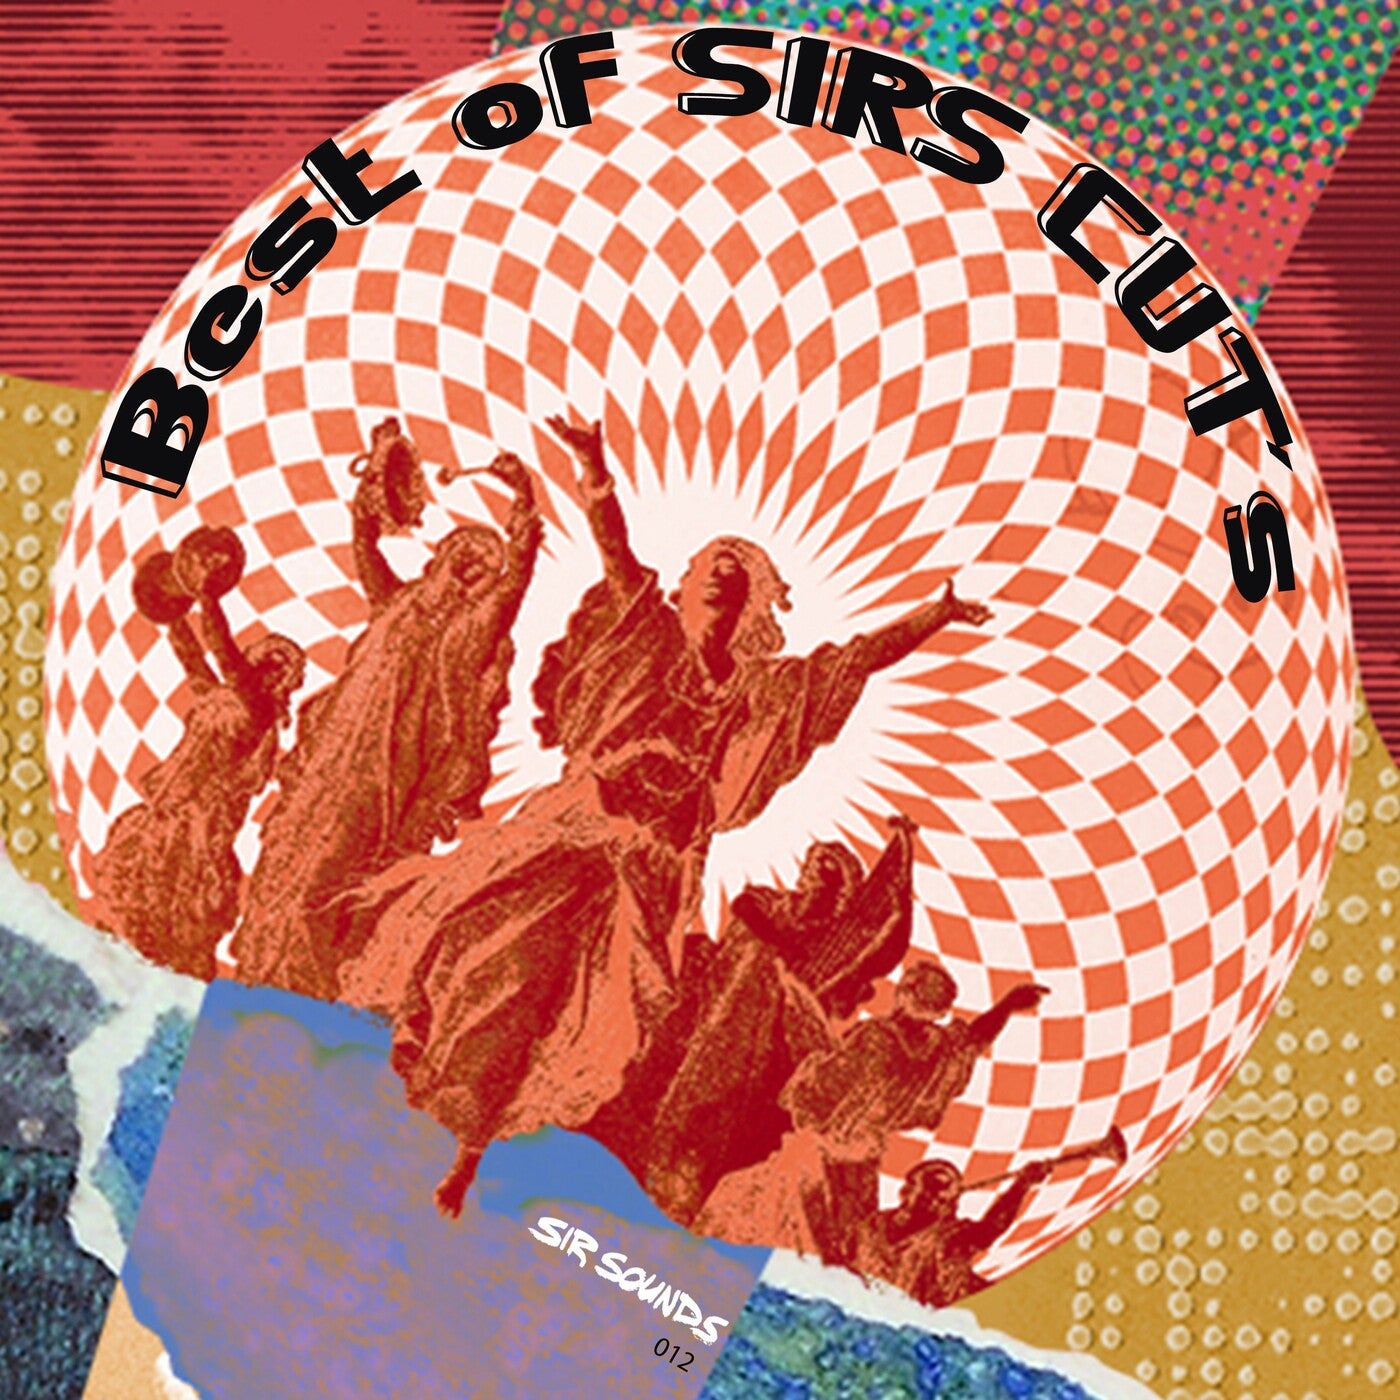 Best of Sirs Cuts (Vol. 1 - Vol. 3)